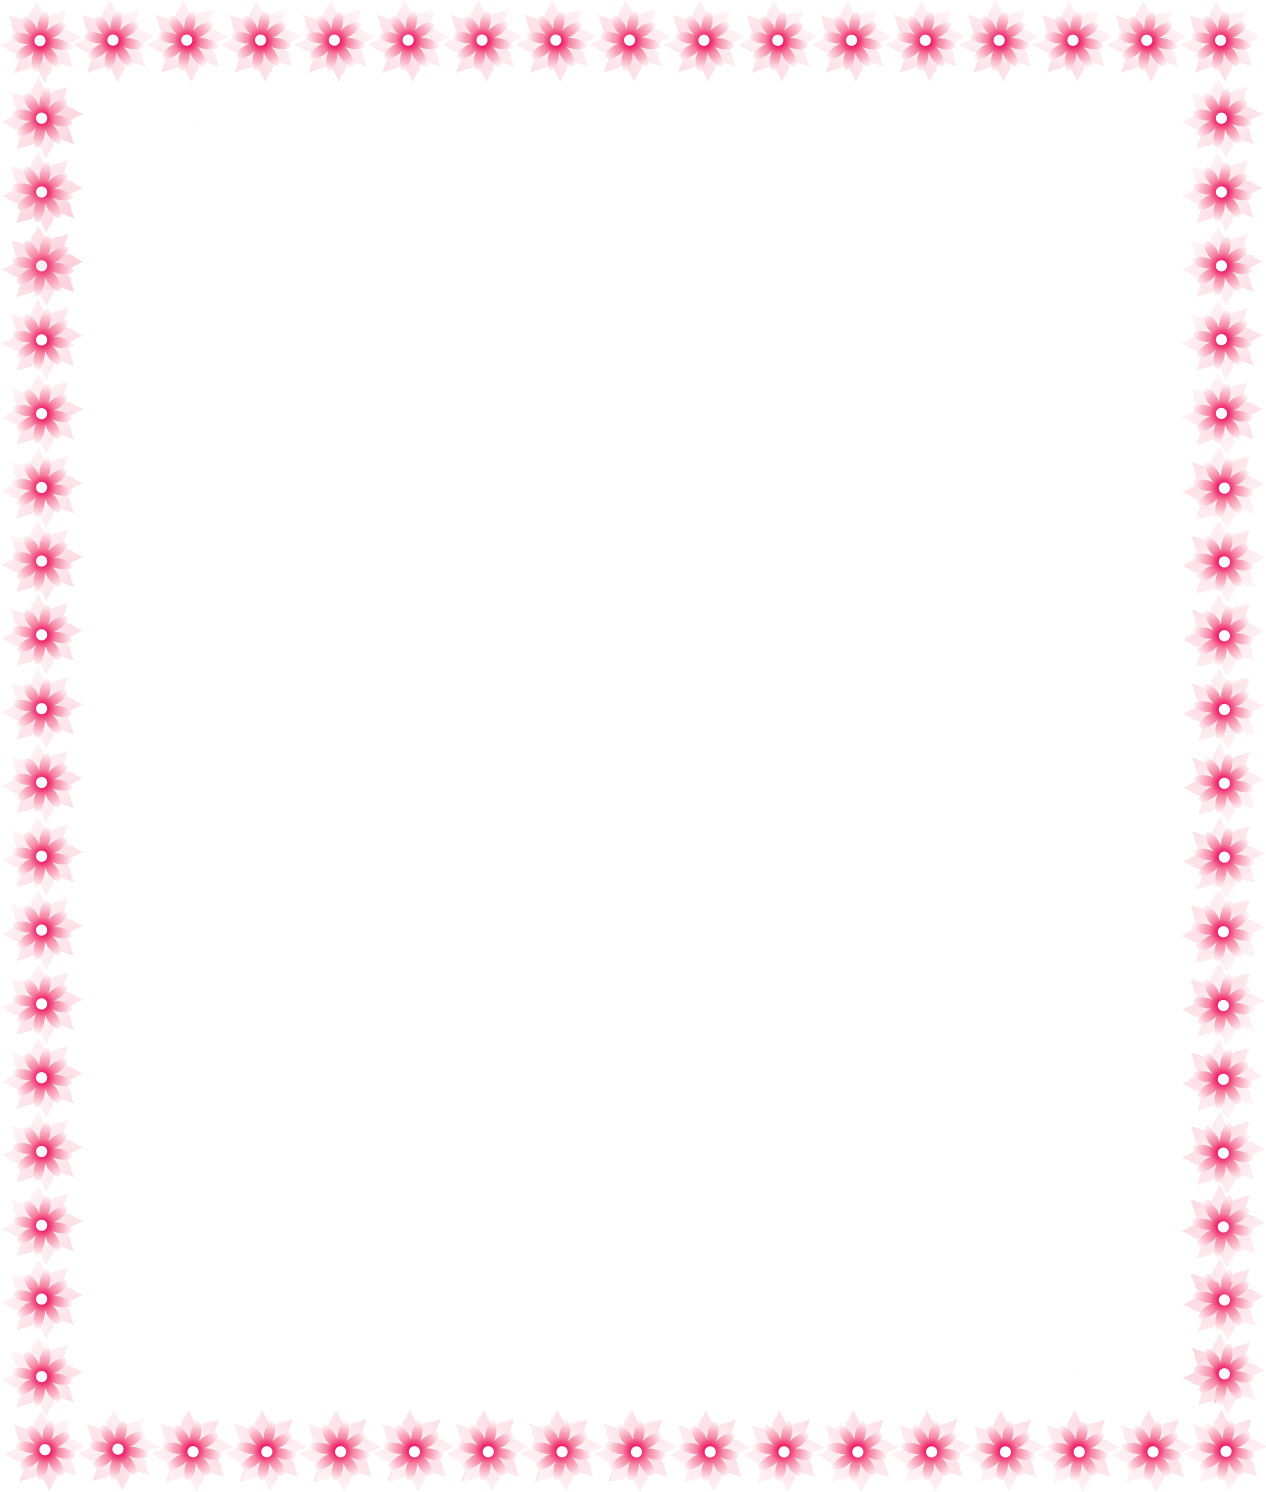 フレーム 囲い枠のイラストno 578 ピンクの花のフレーム 無料のフリー素材集